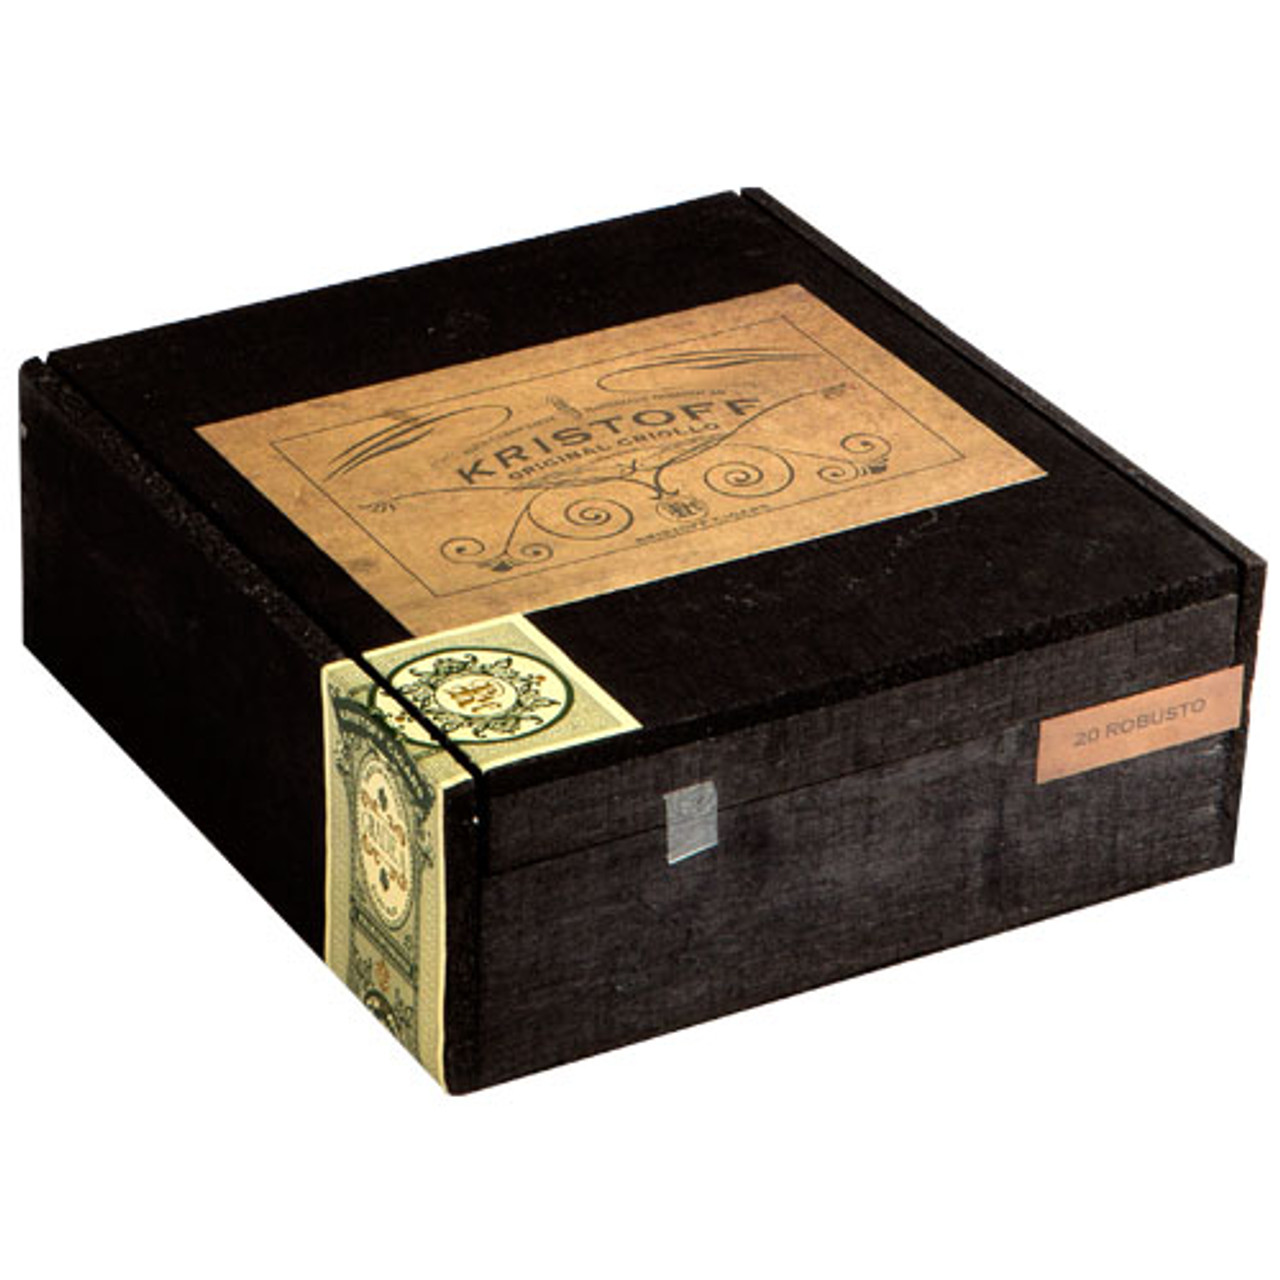 Kristoff Original Criollo Churchill Cigars - 7 x 50 (Box of 20)